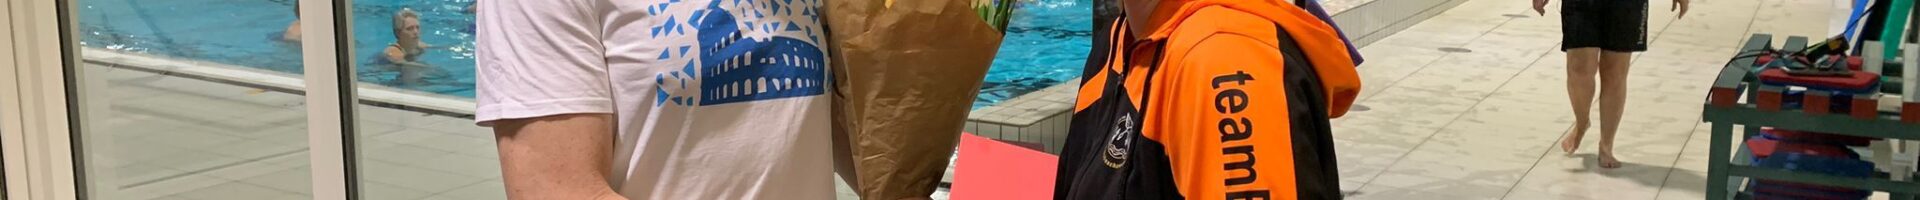 Nico Swart geslaagd voor Opleiding niveau 2 wedstrijdzwemmen